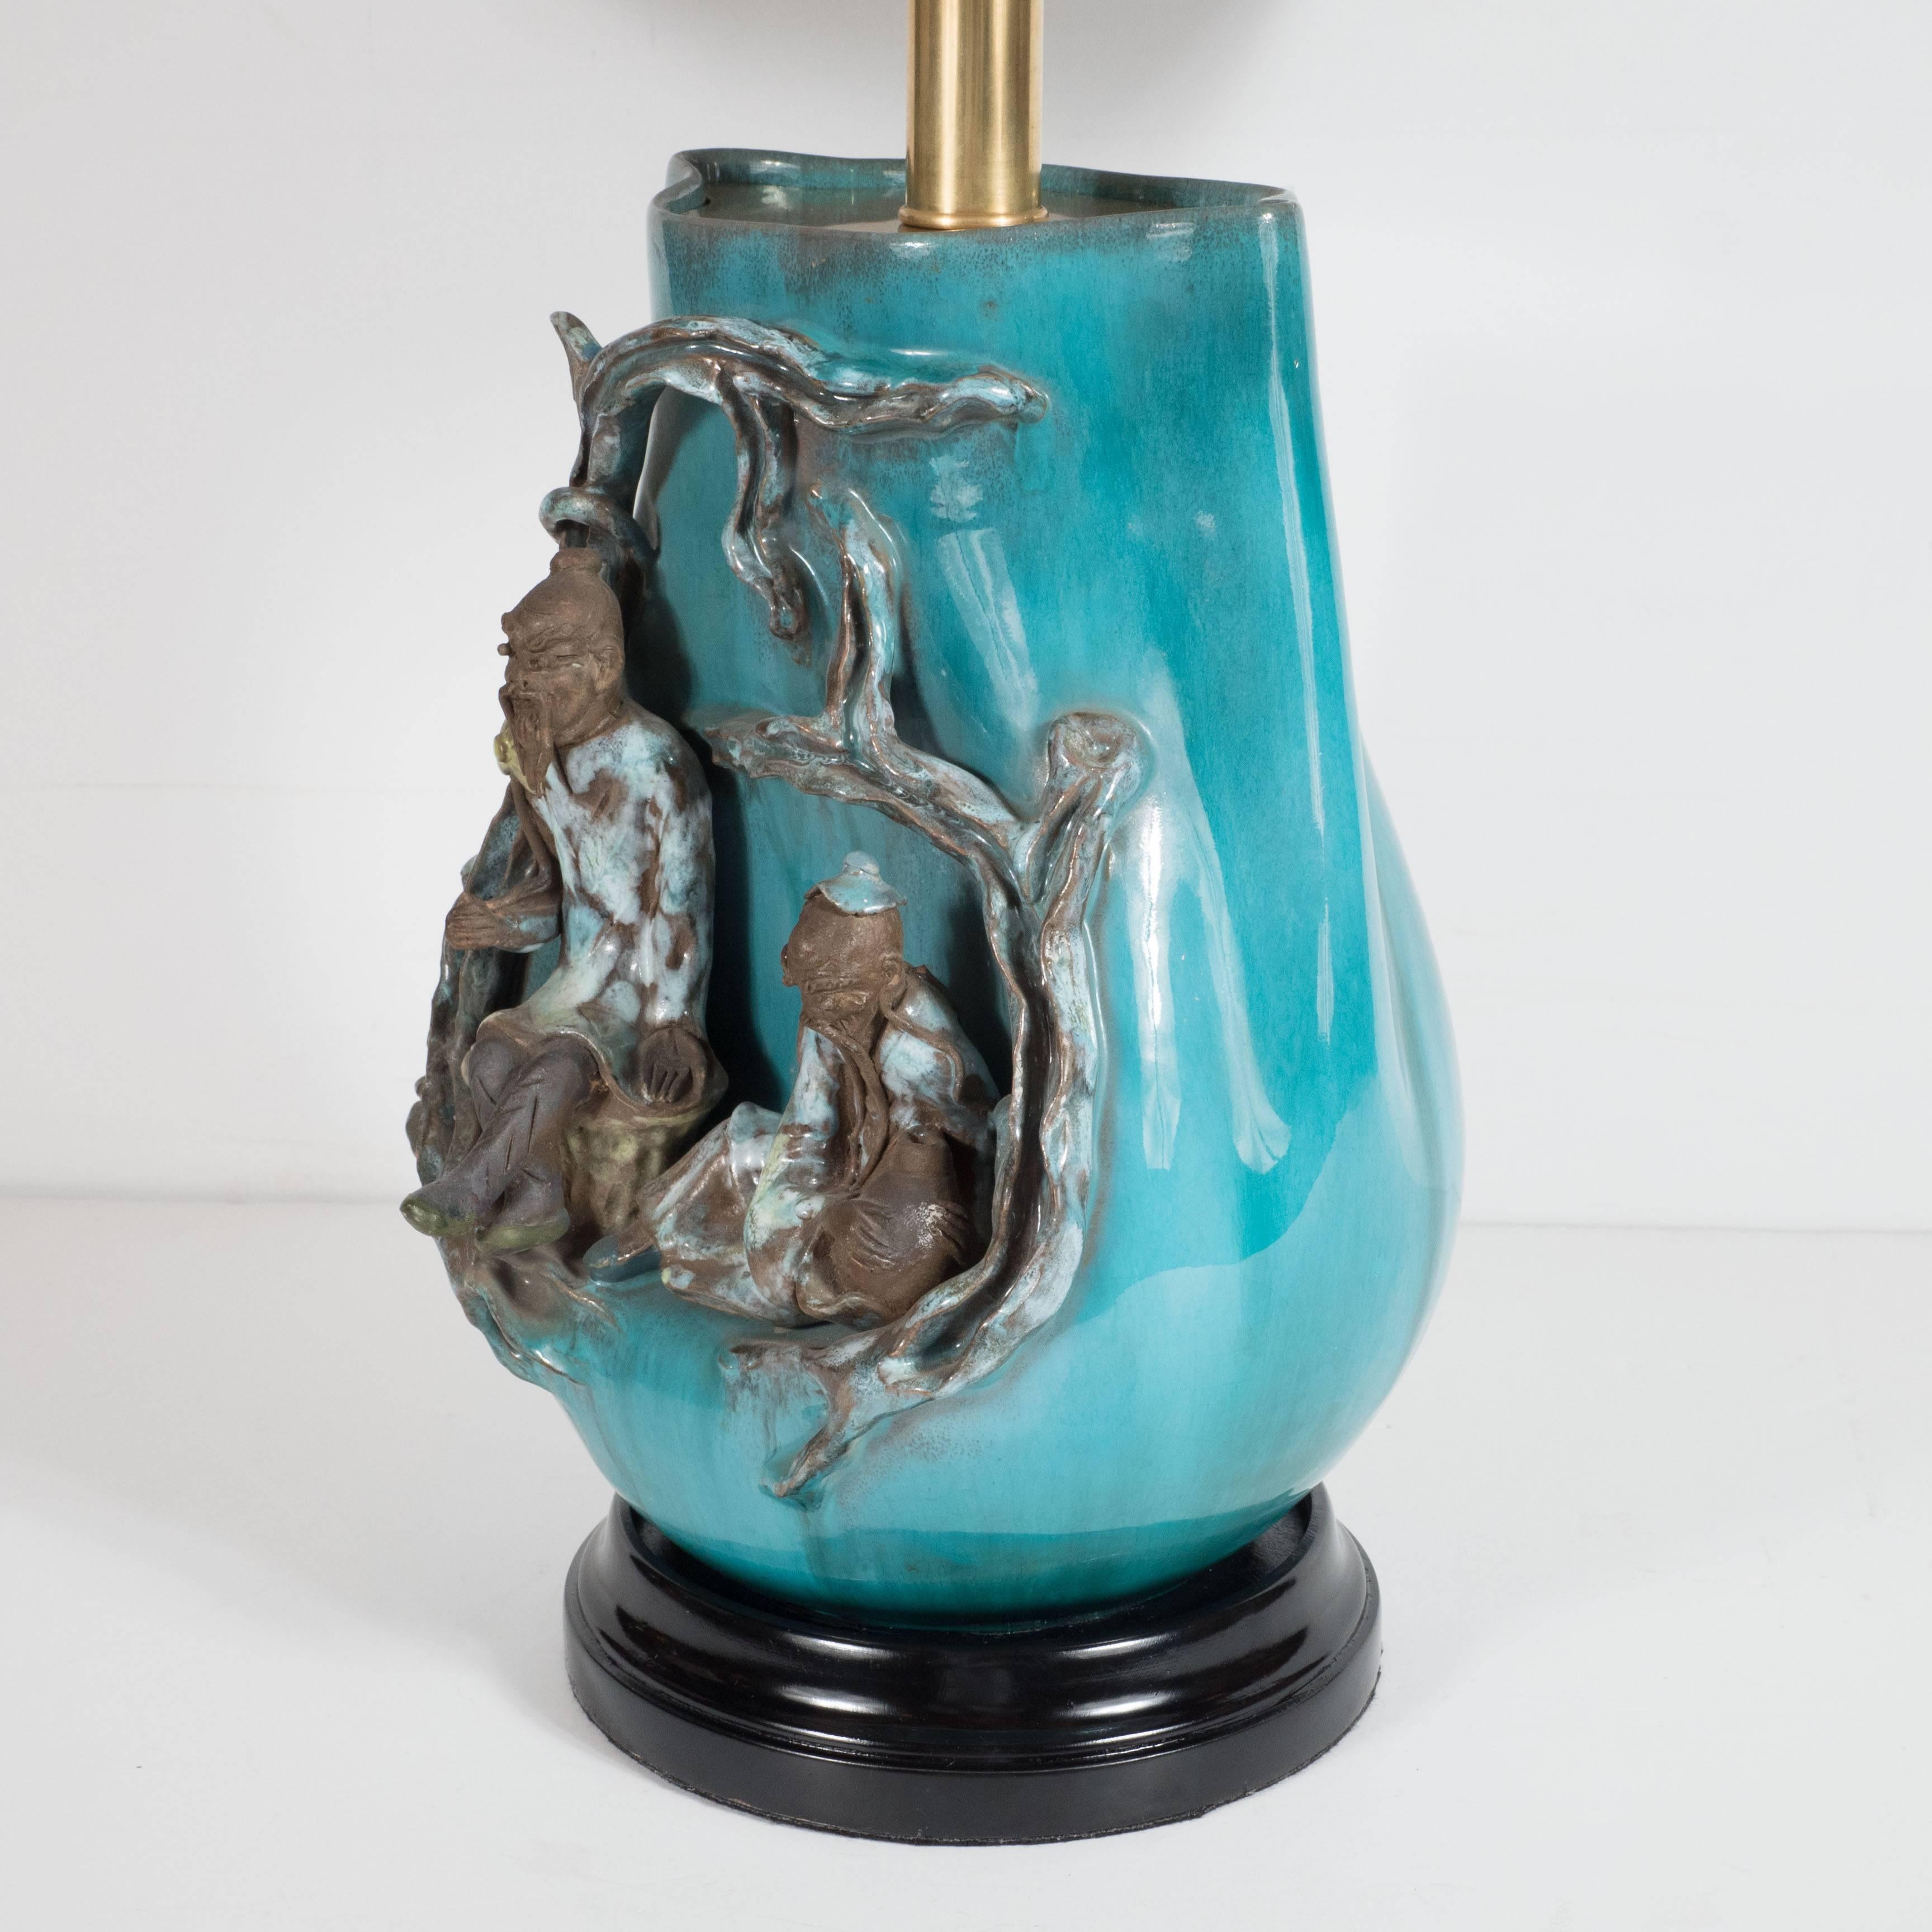 Moderne Tischlampe von Marcello Fantoni aus reich glasiertem, leuchtend türkisblauem Steingut in Vasenform, aufwändig verziert mit zwei unter einem Baum sitzenden Weisen, das Ganze auf einem ebonisierten, gestuften Holzsockel, über einem auffallend